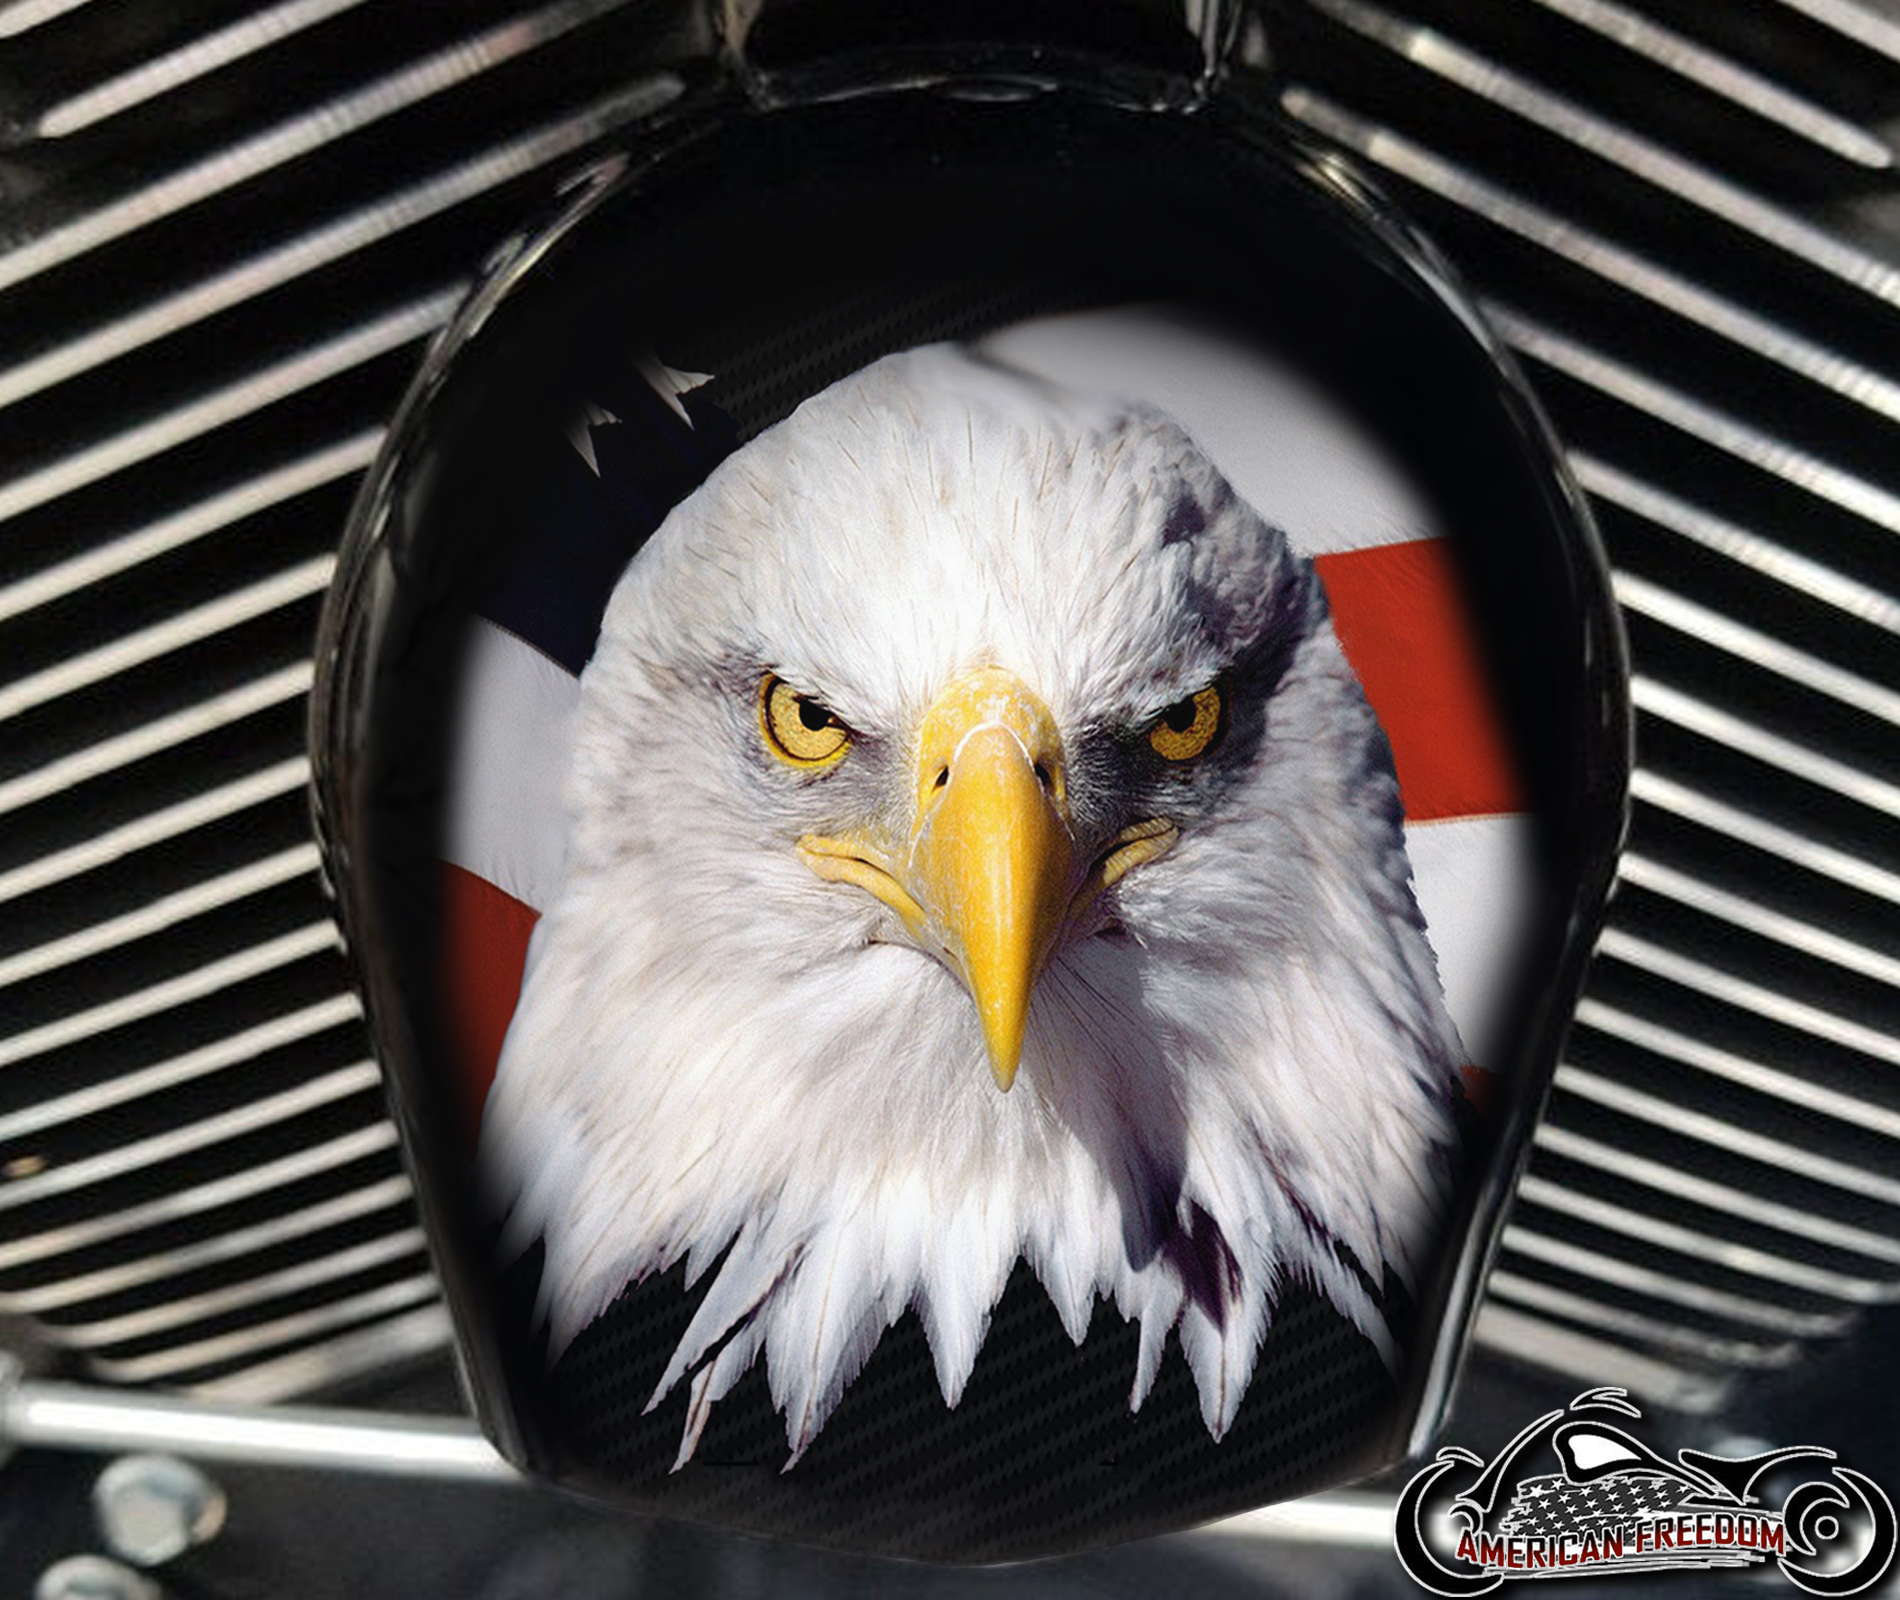 Custom Horn Cover - Eagle Flag 1